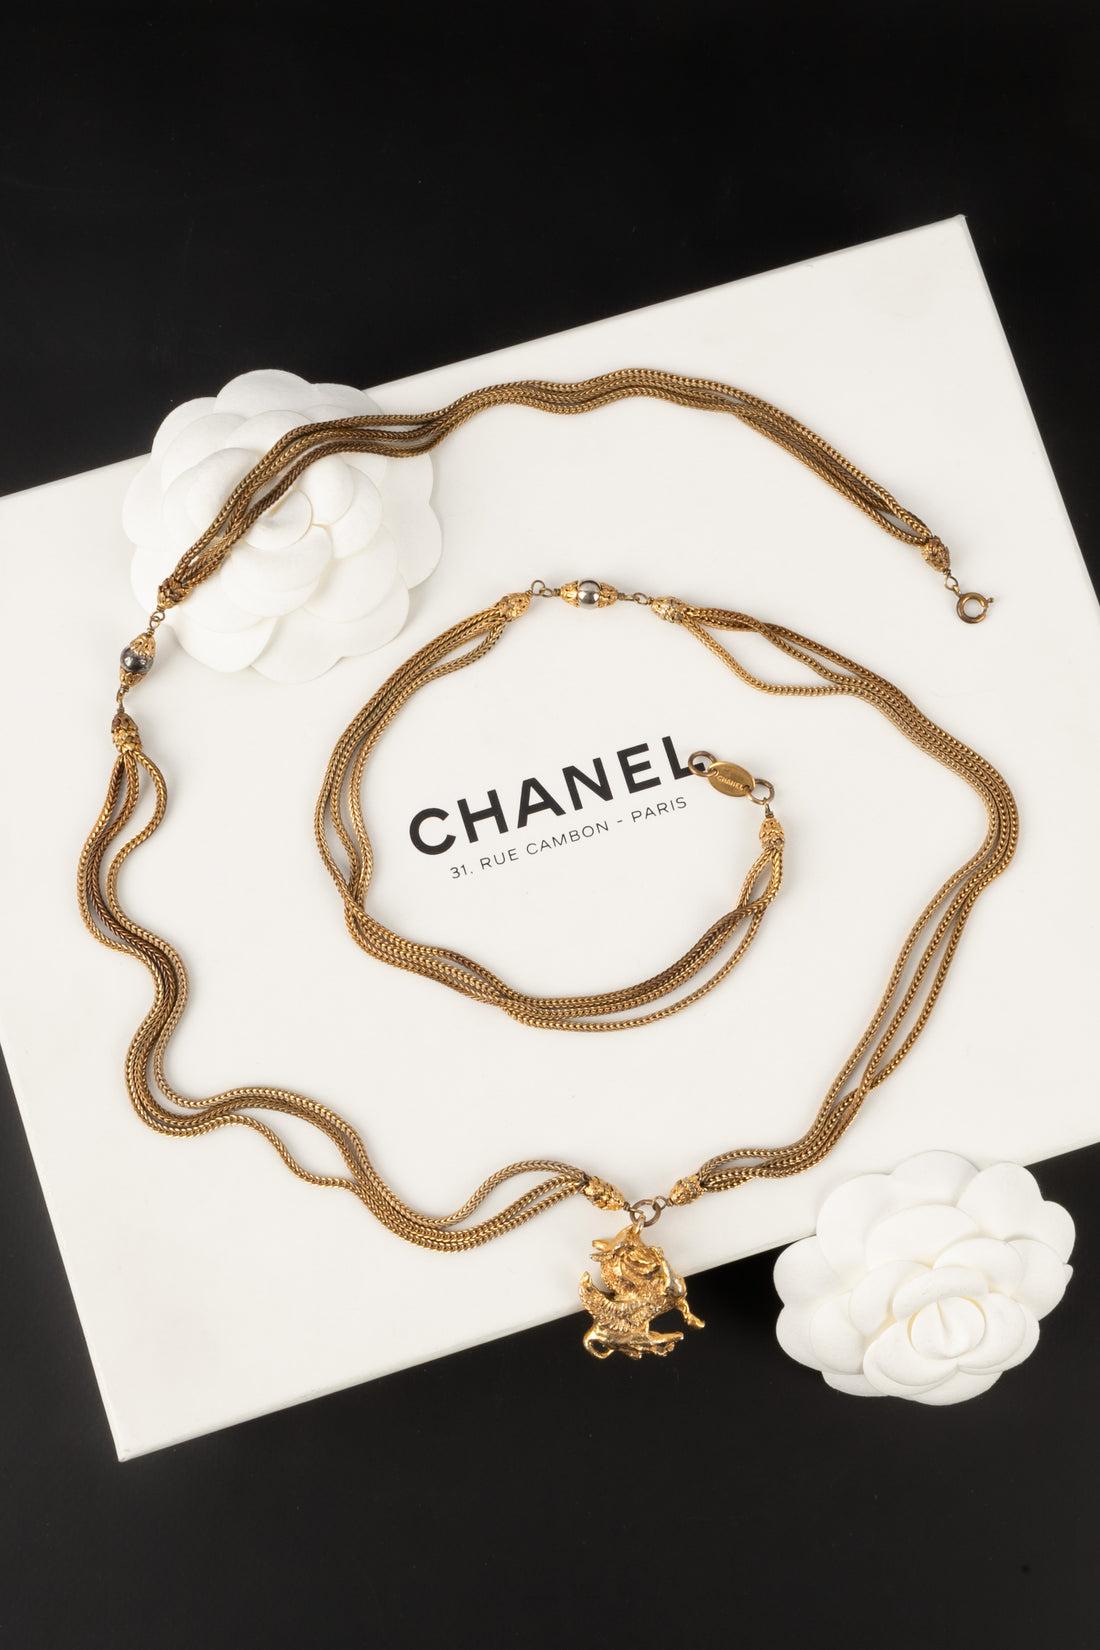 Chanel - (Made in France) Collier Haute Couture en métal doré avec un pendentif représentant un Pégase. Bijoux de l'époque de Coco Chanel.

Informations complémentaires :
Condit : Très bon état.
Dimensions : Longueur : 96 cm

Référence du vendeur :